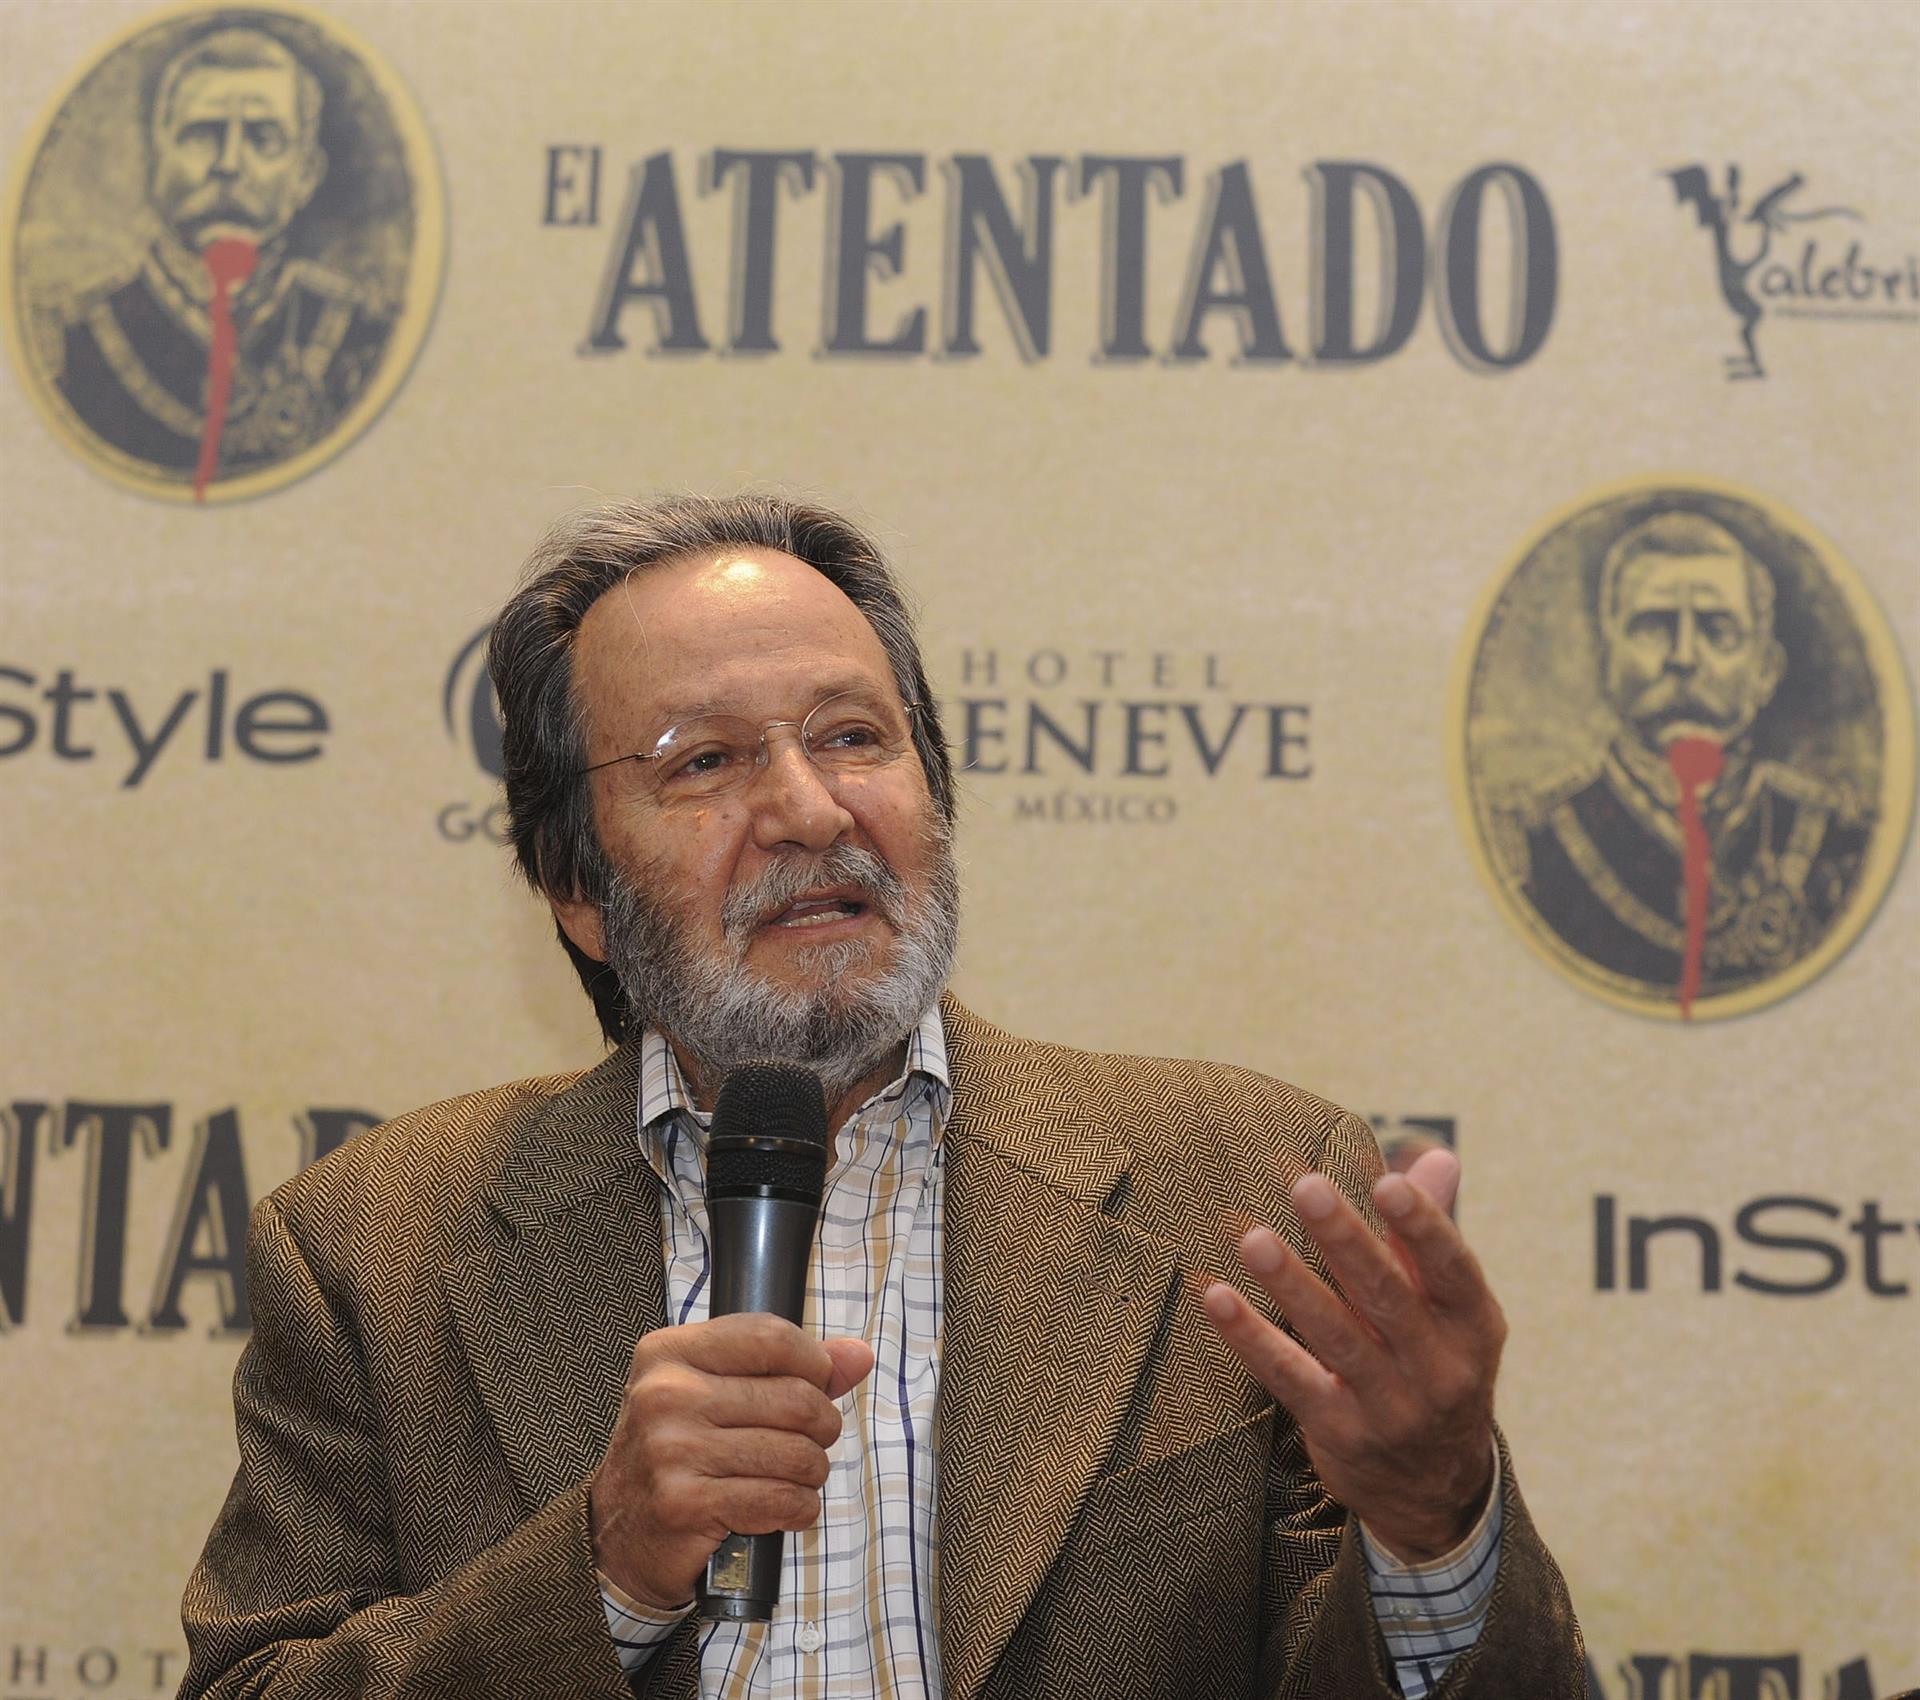 Fotografía de archivo fechada el 23 de agosto de 2010 que muestra al realizador mexicano, Jorge Fons, mientras habla durante una rueda de prensa en Ciudad de México (México). EFE/Mario Guzmán
